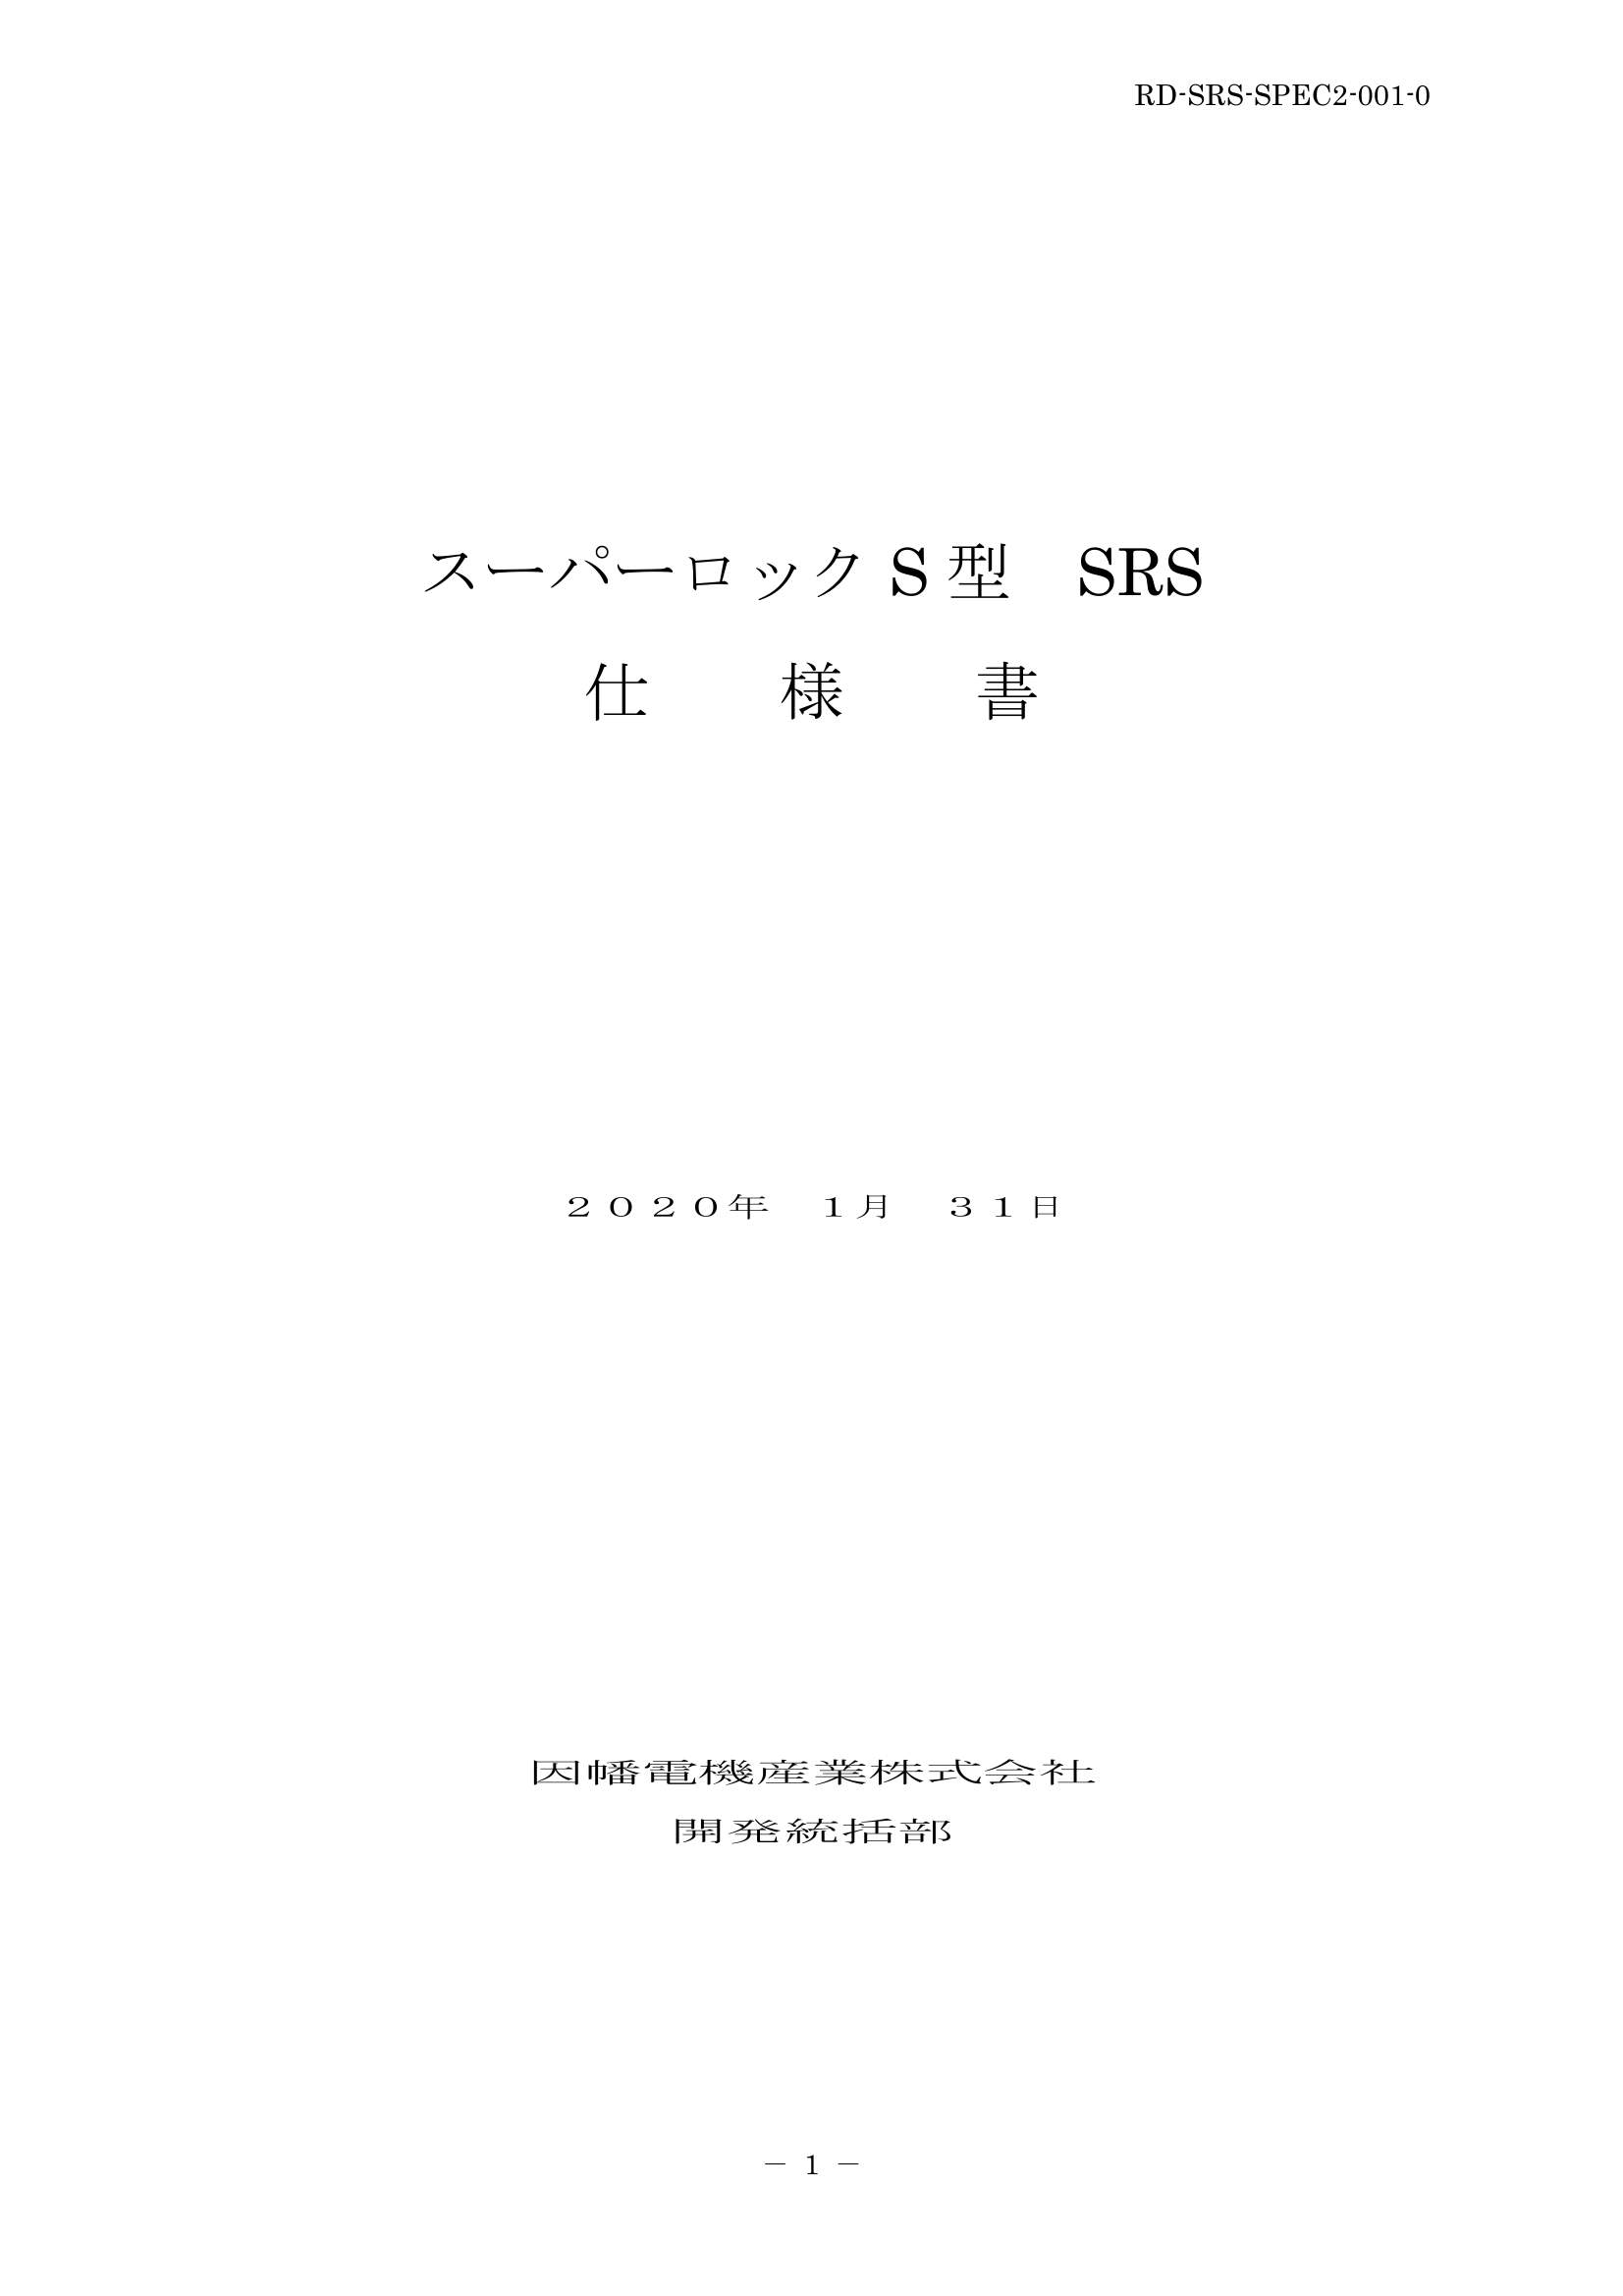 SRS_仕様書_20200131.pdf